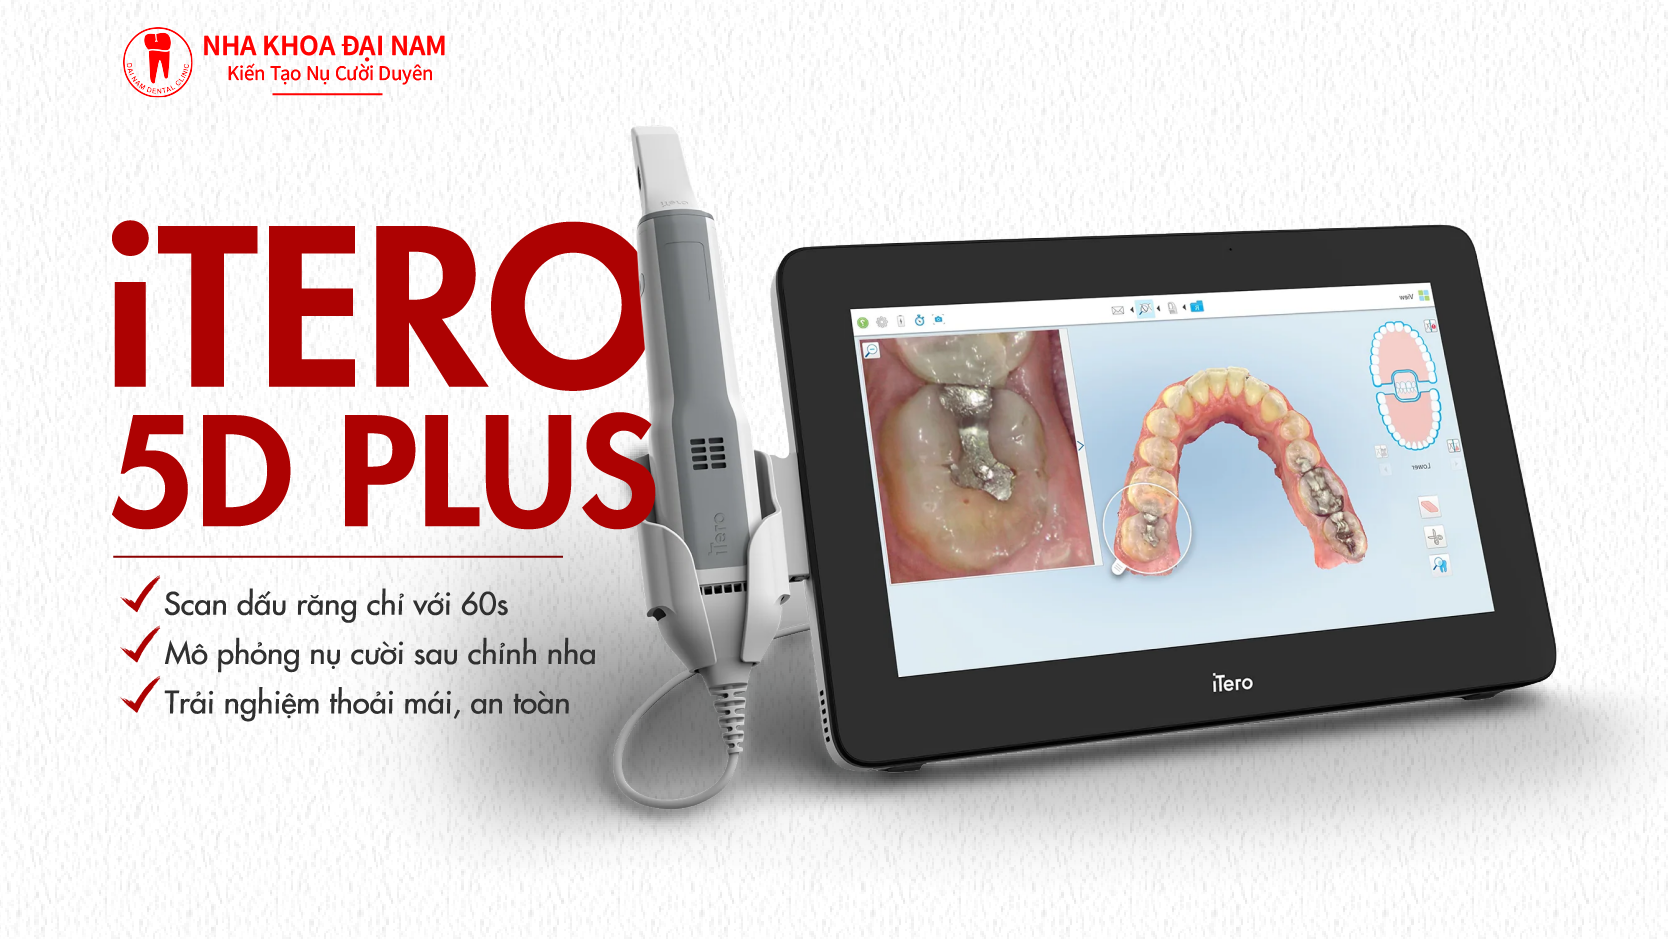 Máy scan răng iTero 5D Plus hỗ trợ chẩn đoán chính xác